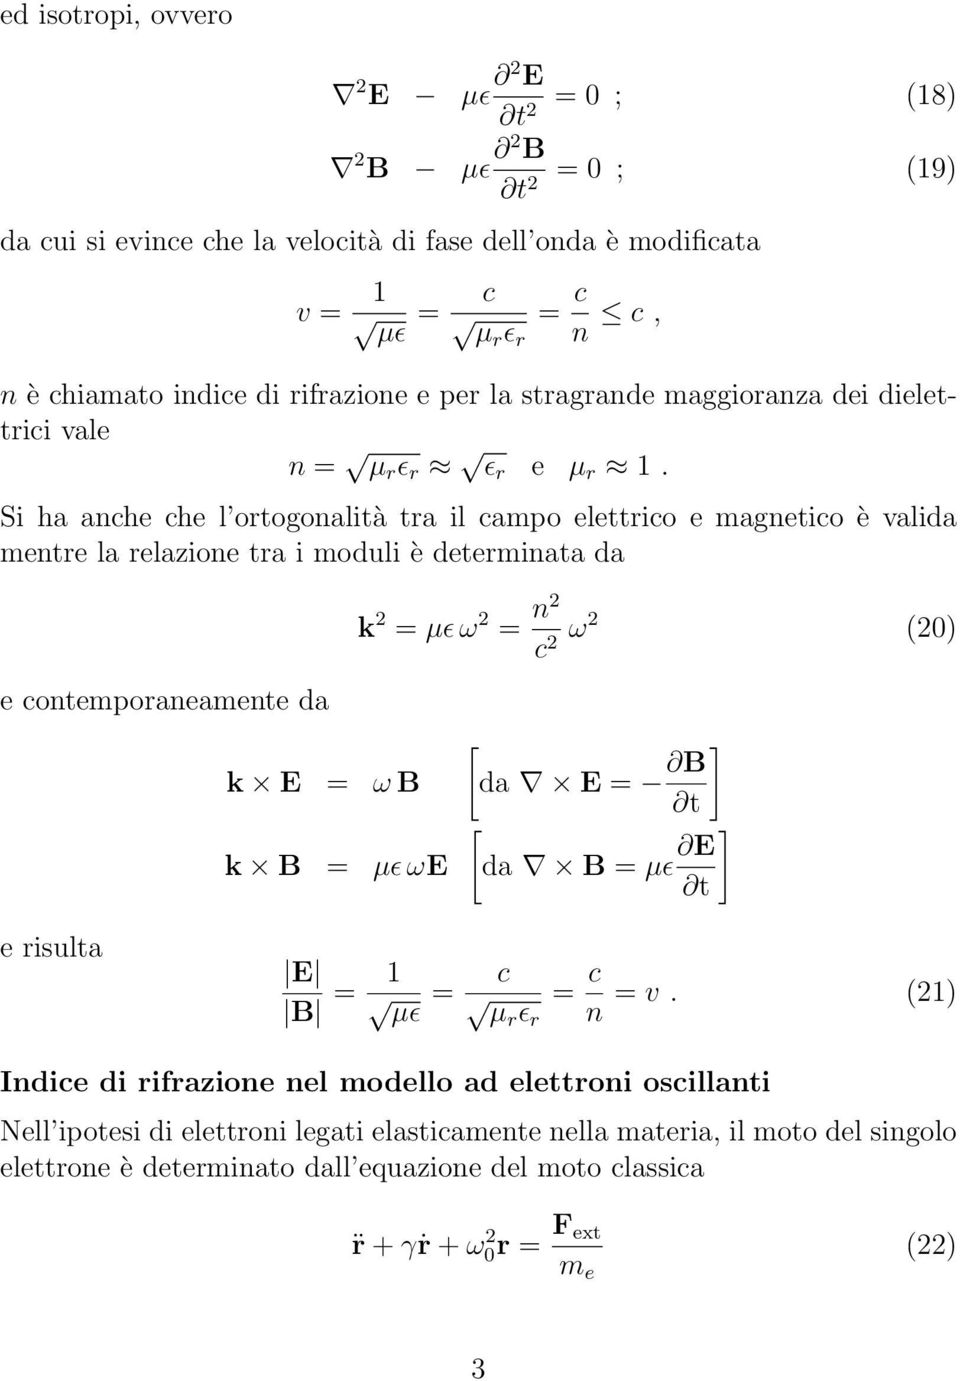 Si ha anche che l ortogonalità tra il campo elettrico e magnetico è valida mentre la relazione tra i moduli è determinata da e contemporaneamente da k E ω B k B µɛ ωe k 2 µɛ ω 2 n2 c